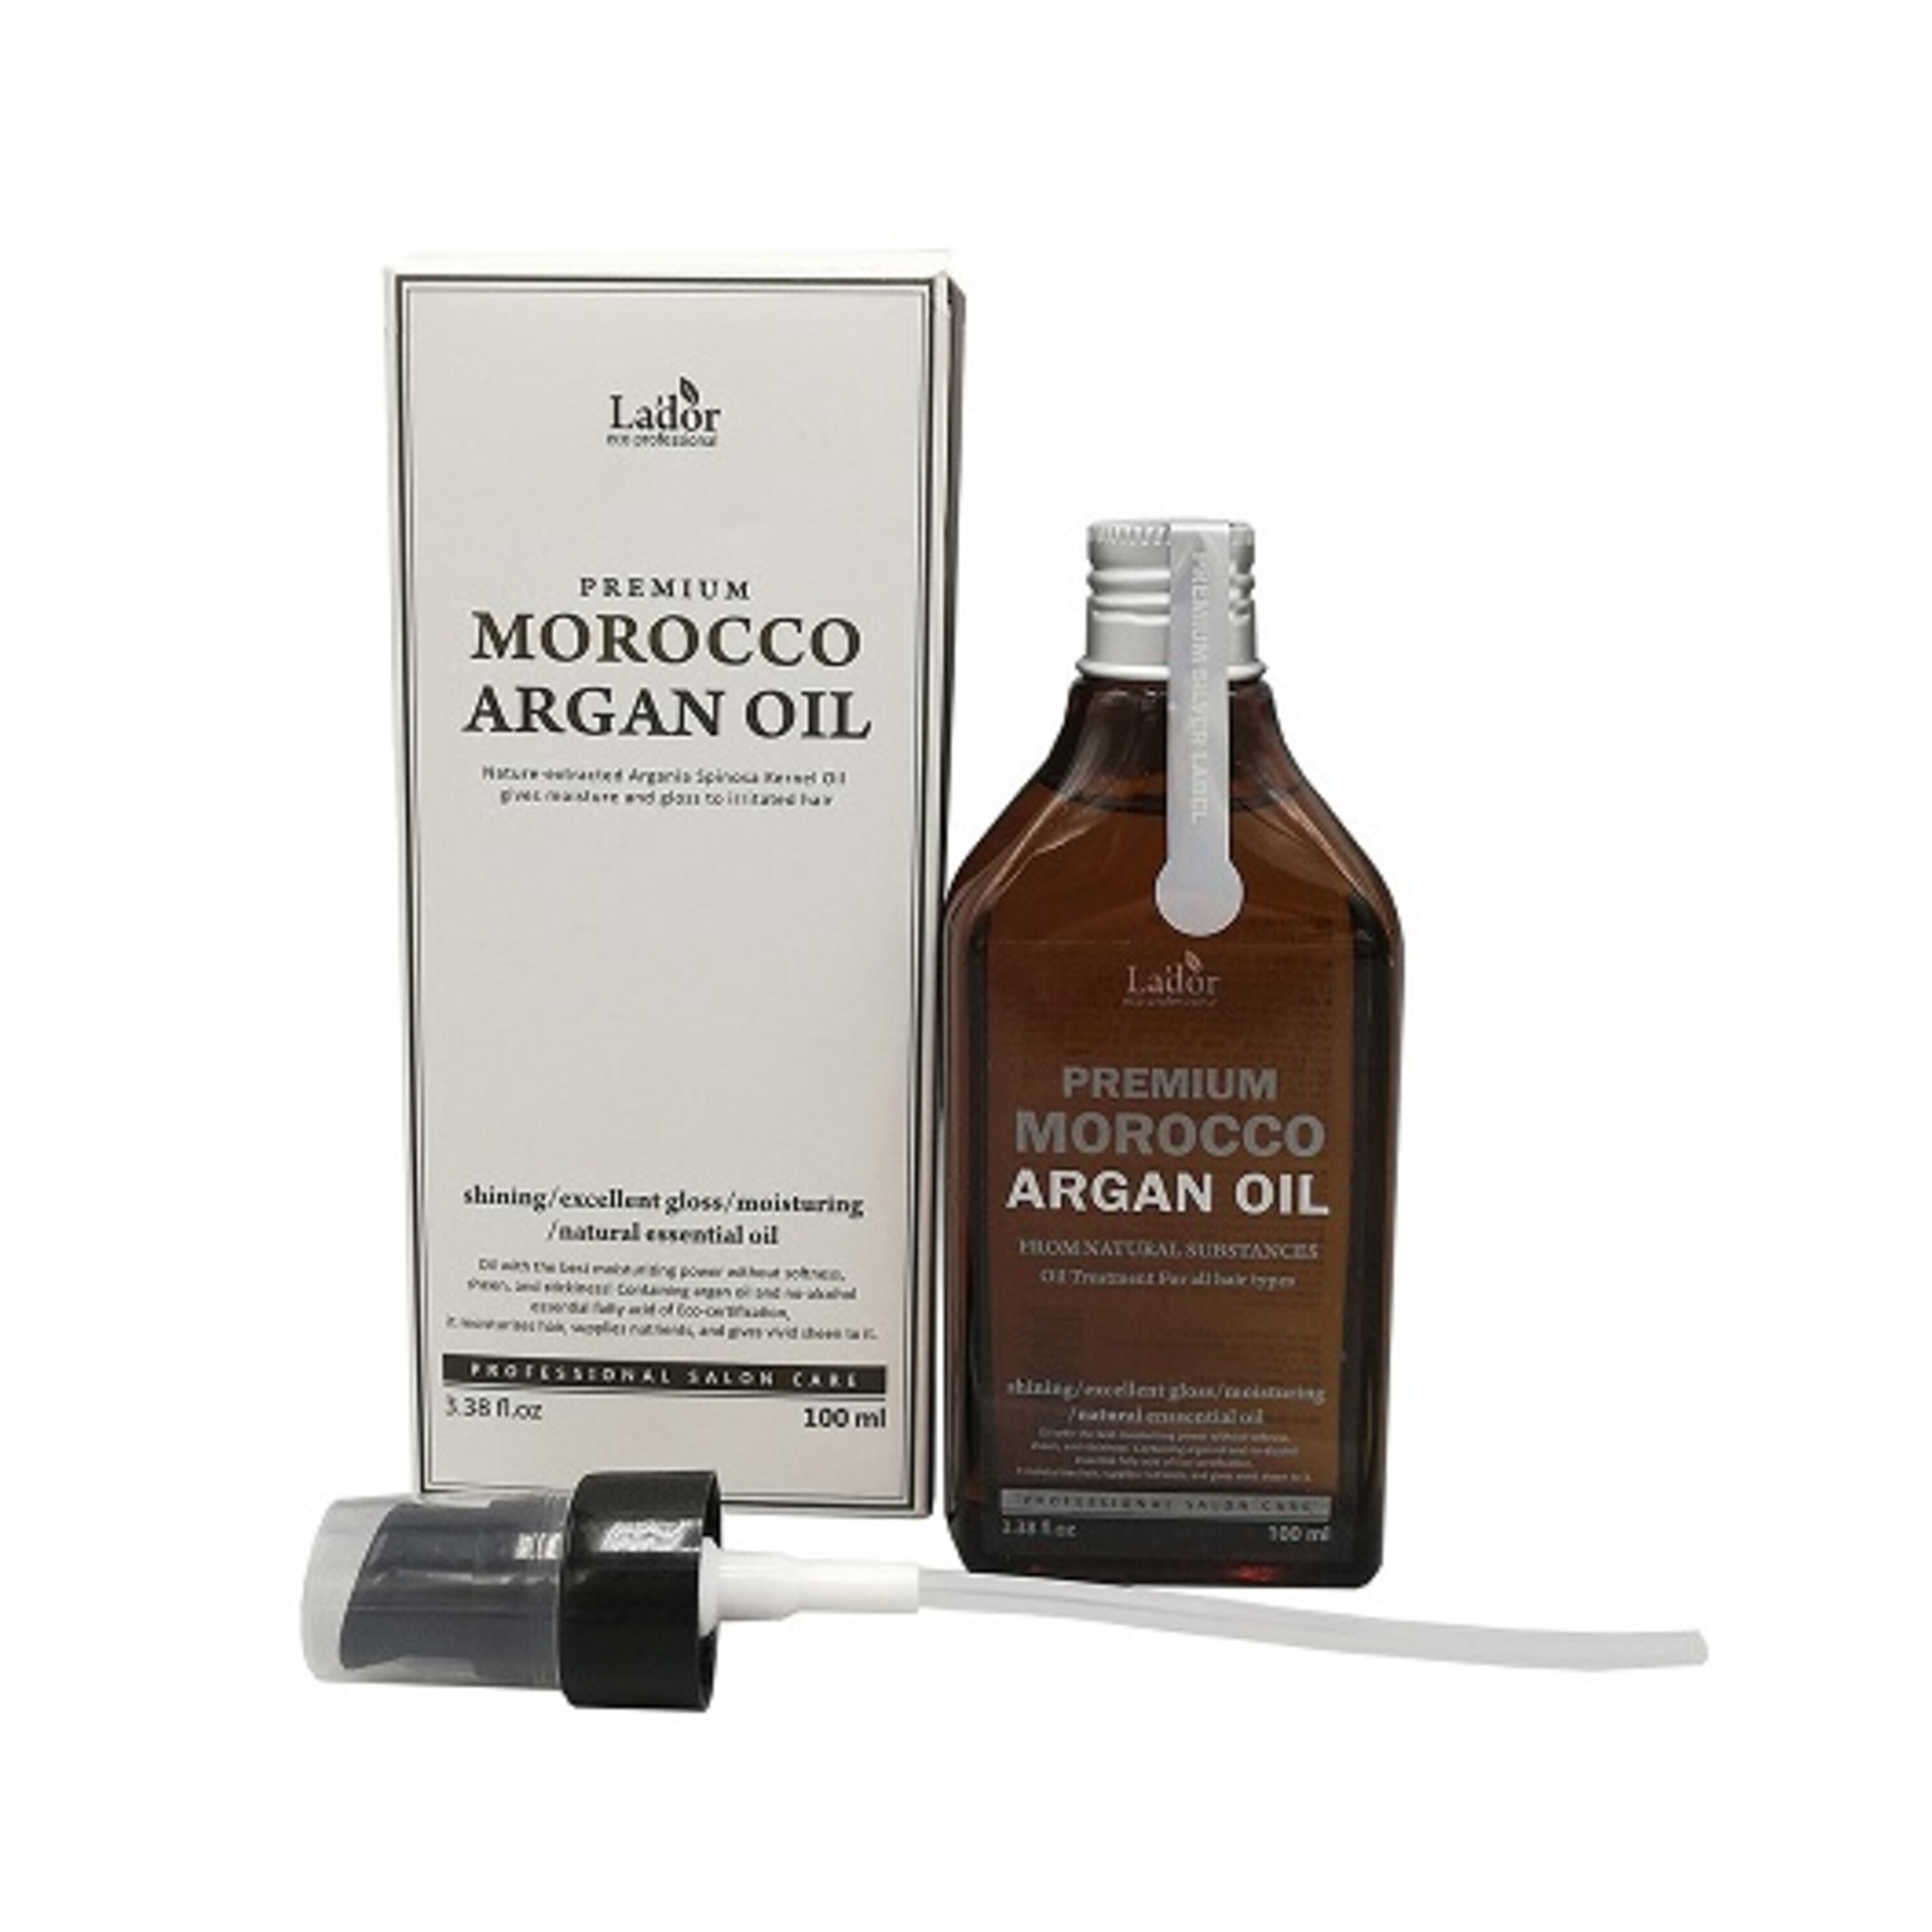 Марокканское аргановое масло. Lador Premium Argan hair Oil. La’dor Premium Morocco Argan Oil аргановое масло для волос 100мл. Масло для волос аргановое - lador Premium Morocco Argan hair Oil. Масло для волос lador Premium Morocco.